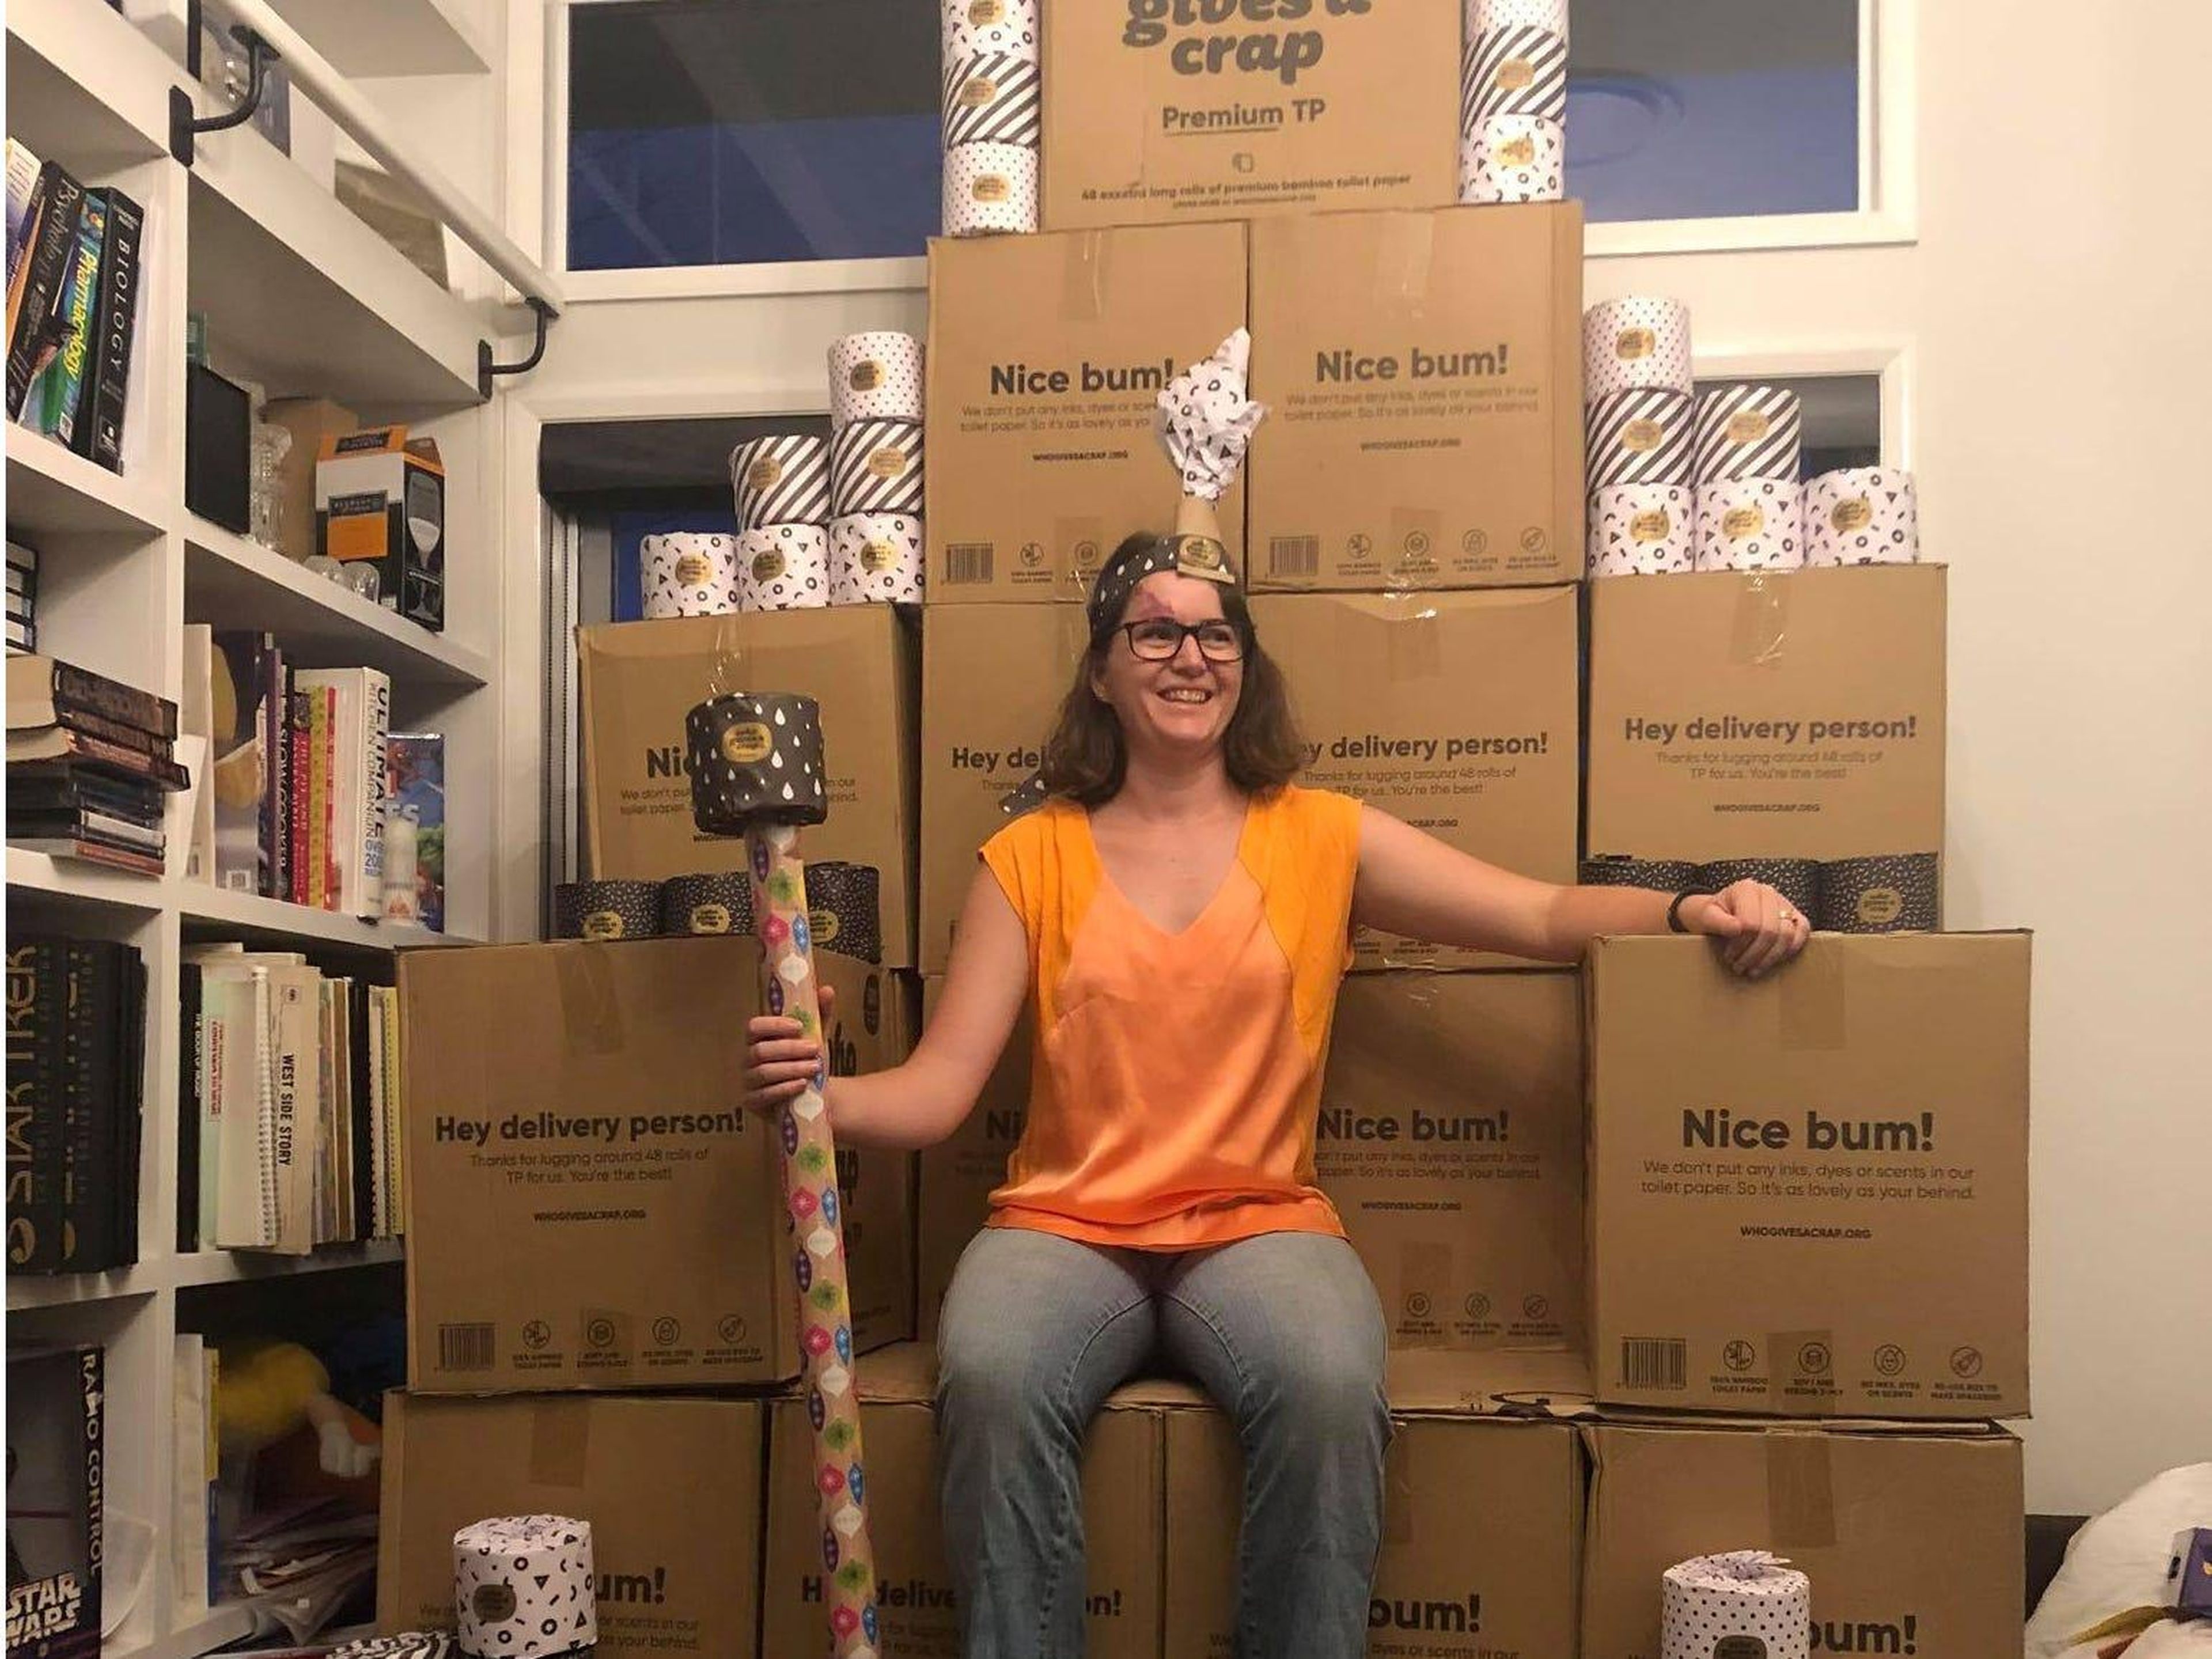 Una mujer se sienta encima de un "trono" hecho de cajas que contienen papel higiénico en Toowoomba, Australia, el 5 de marzo de 2020. Imagen obtenida en las redes sociales.